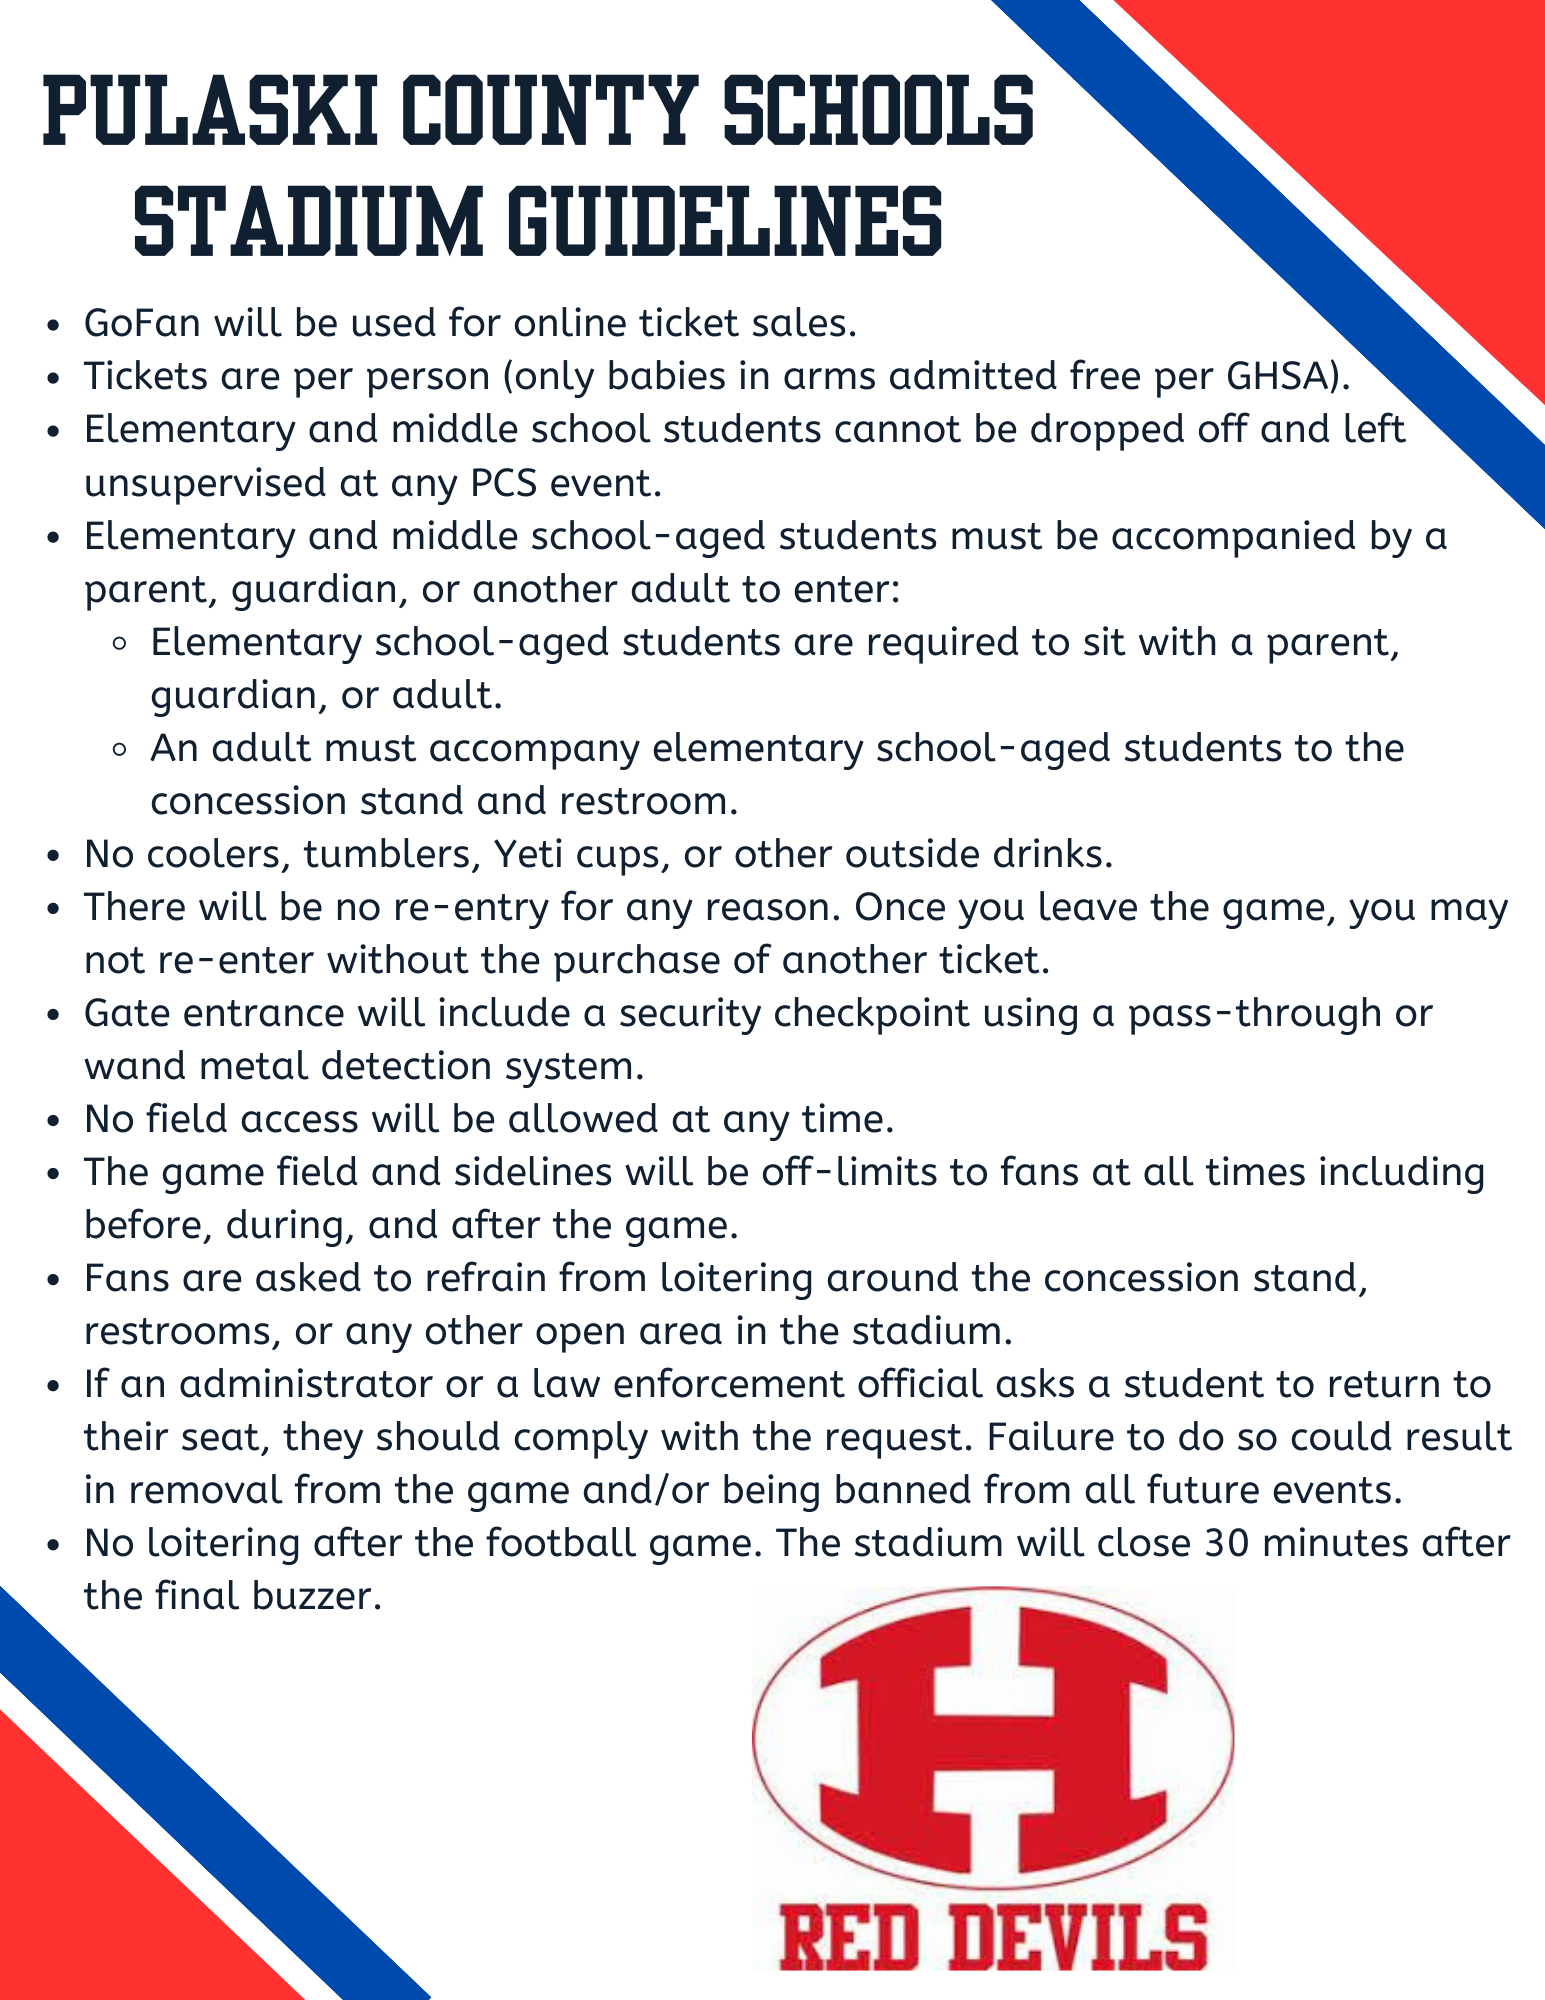 Stadium Guidelines